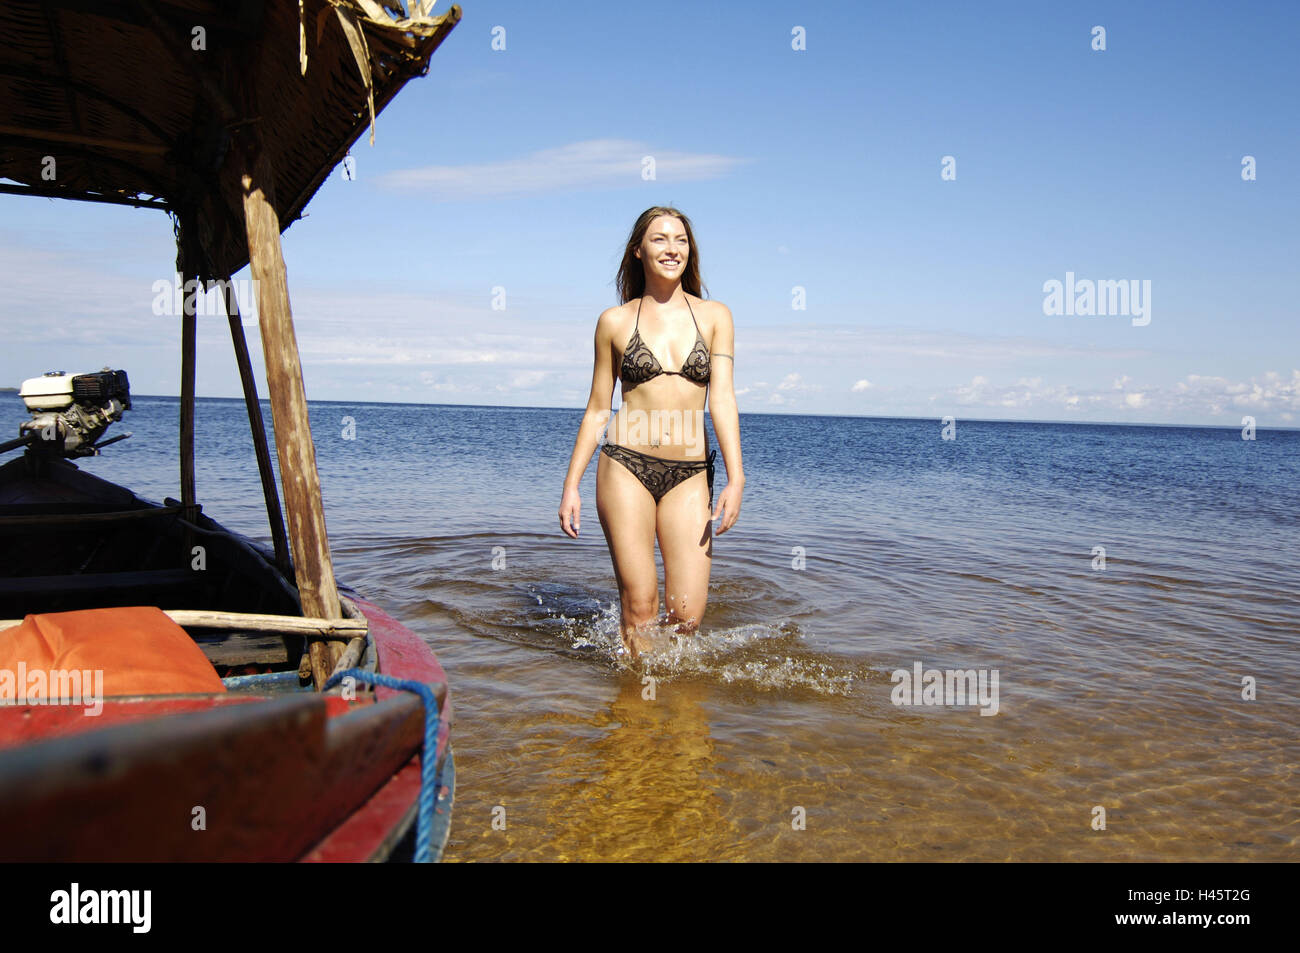 Woman, young, bikini, sea, fishing boat, Stock Photo